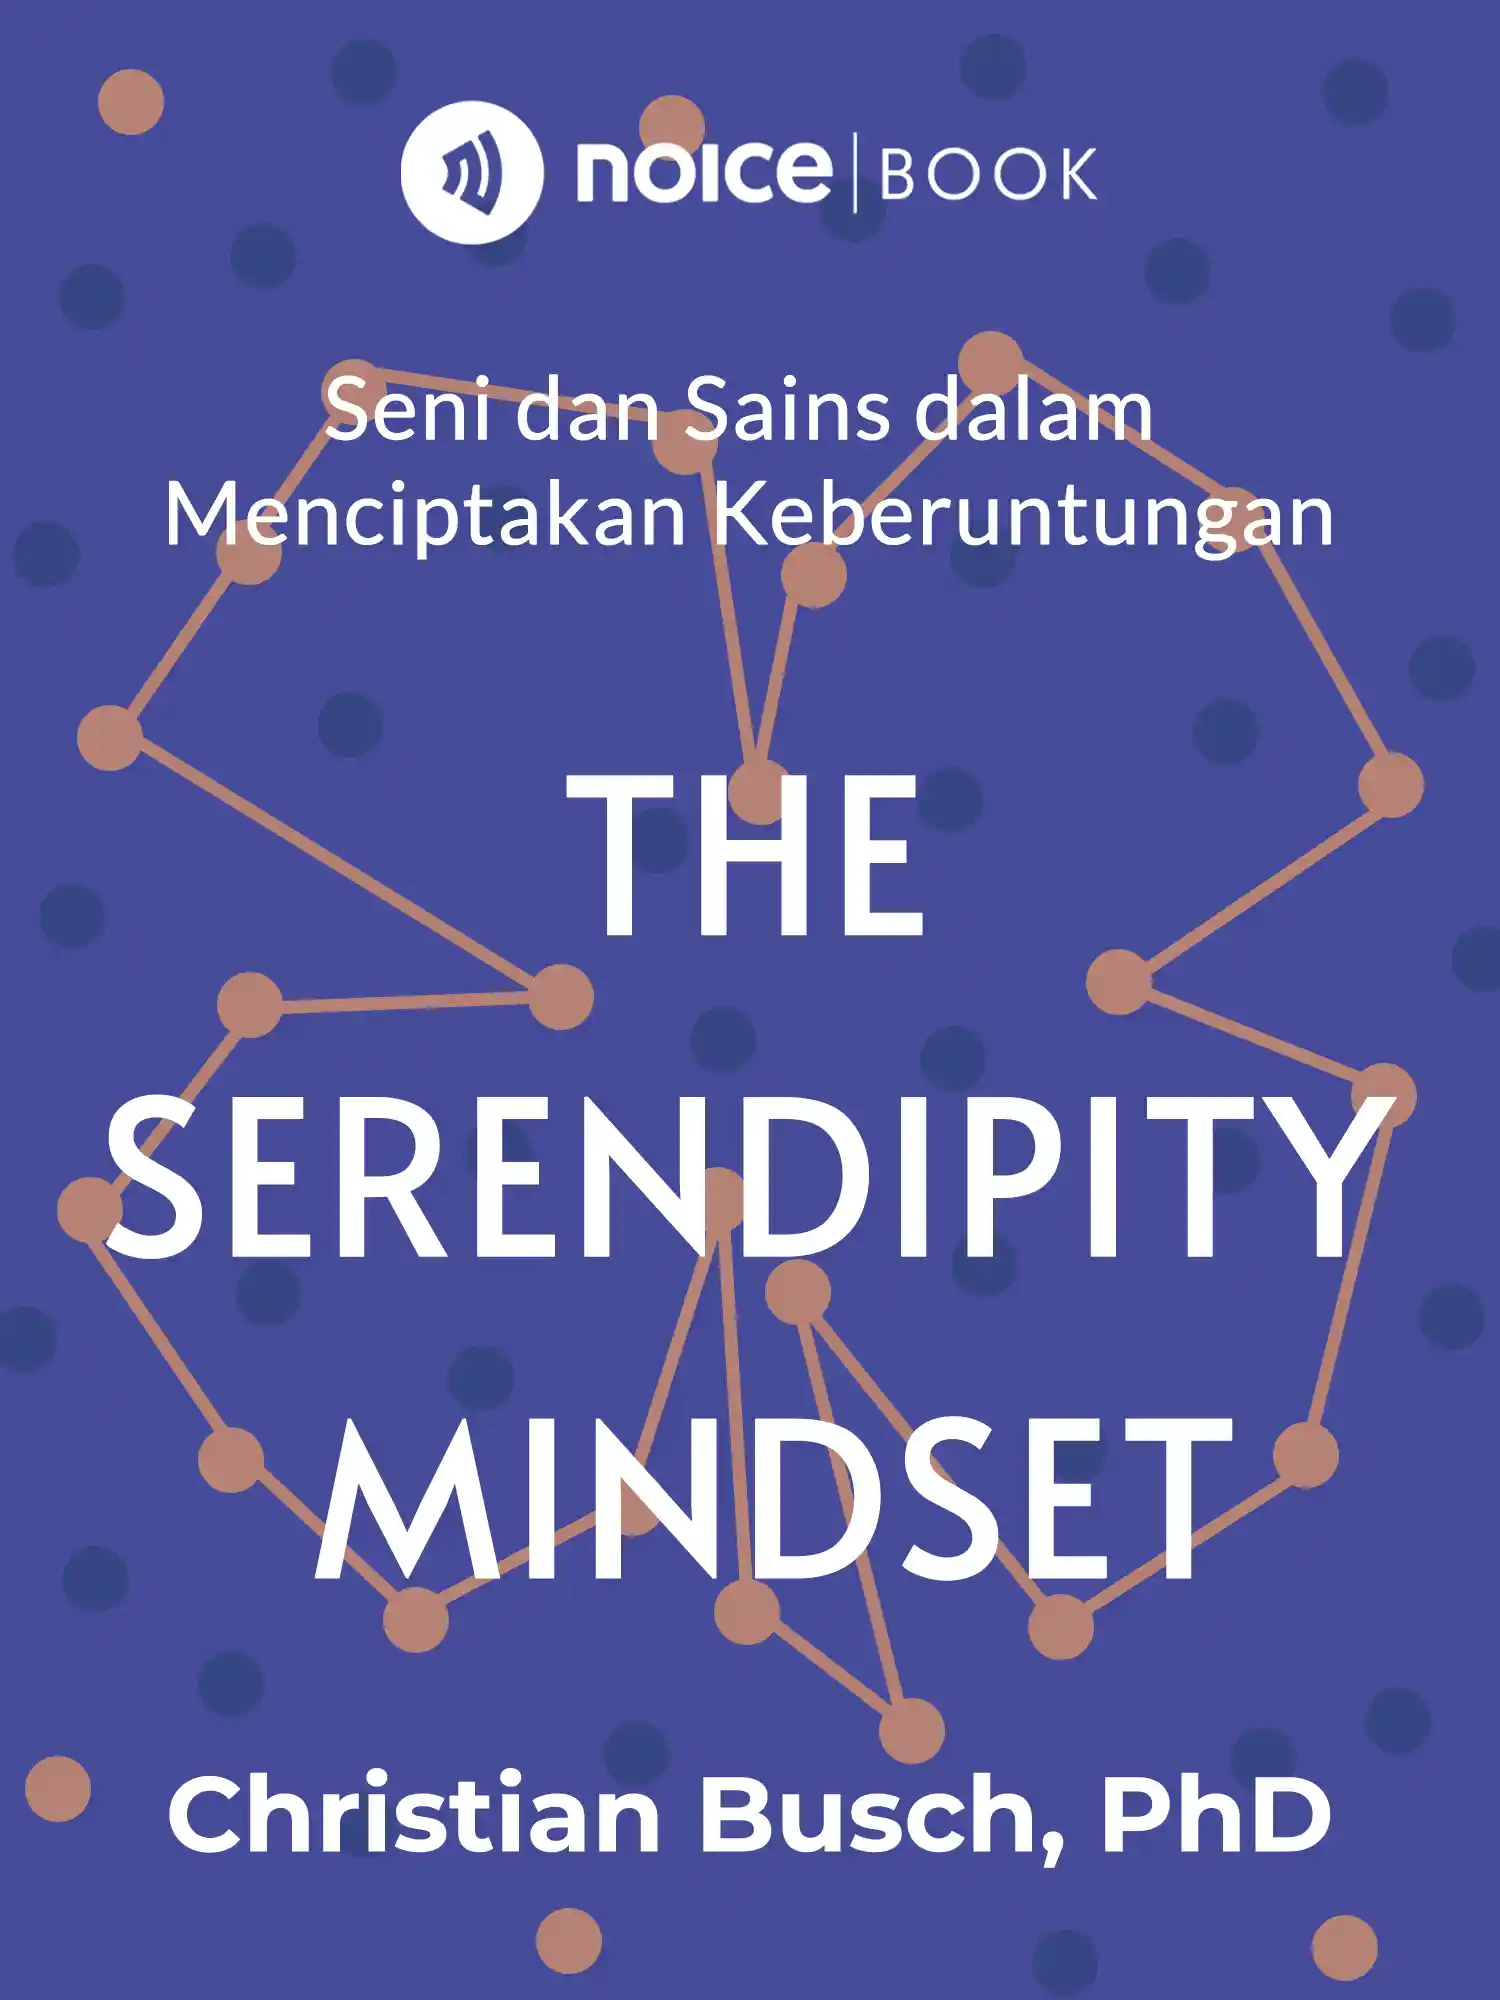 #7 Untuk membina serendipity, ciptakan ruang untuk menggabungkan ide baru dari sumber-sumber yang berbeda.